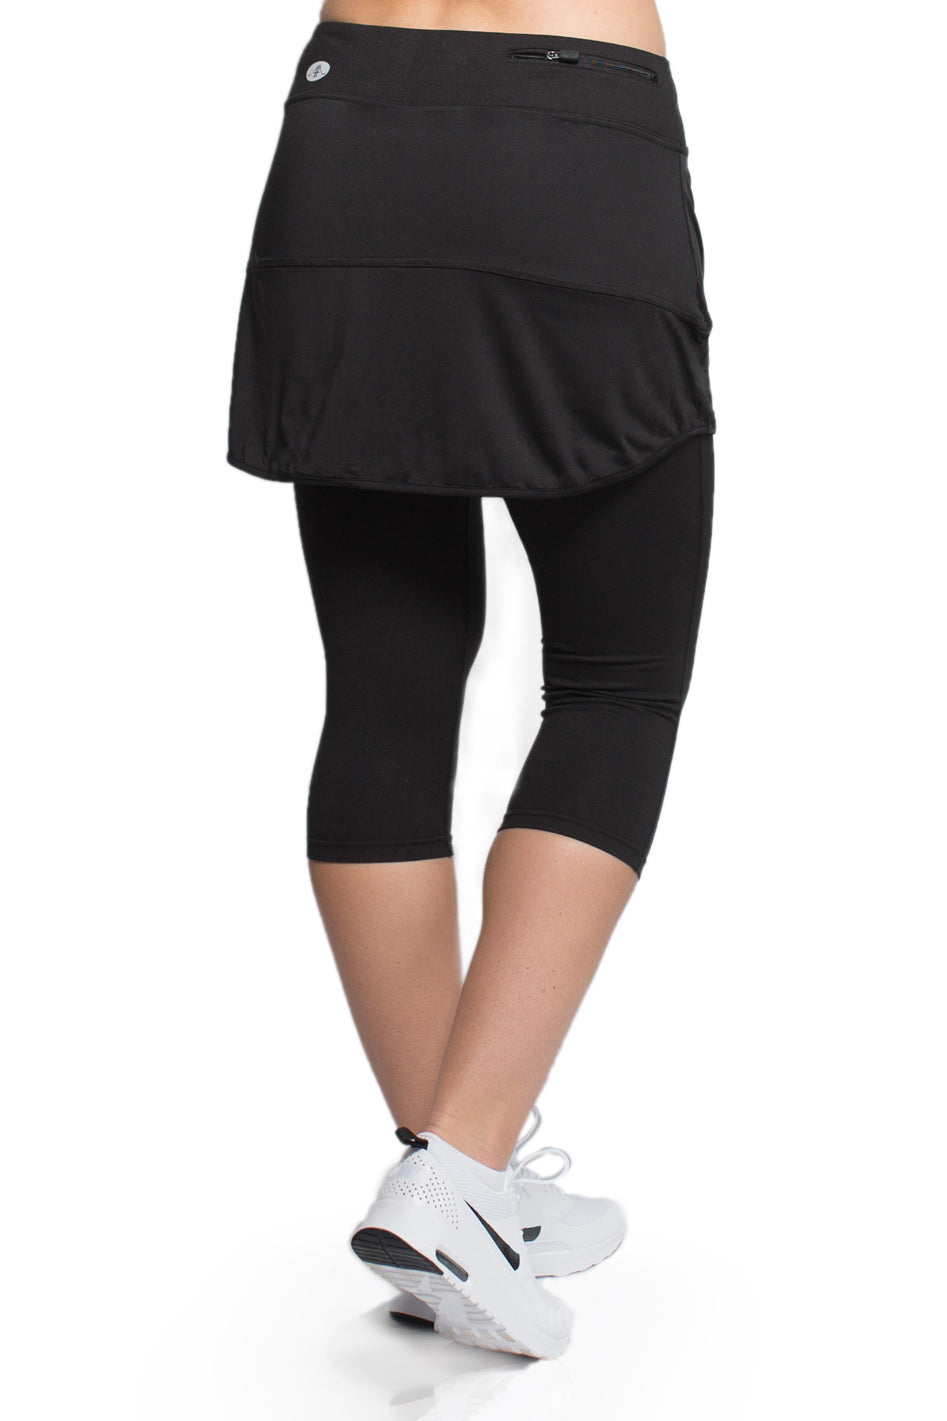 Buy Woman Skirted Leggings Tennis Skorts Running Skirt with Legging Skapri  3/4 Sports Active Capri with Pockets Online at desertcartINDIA